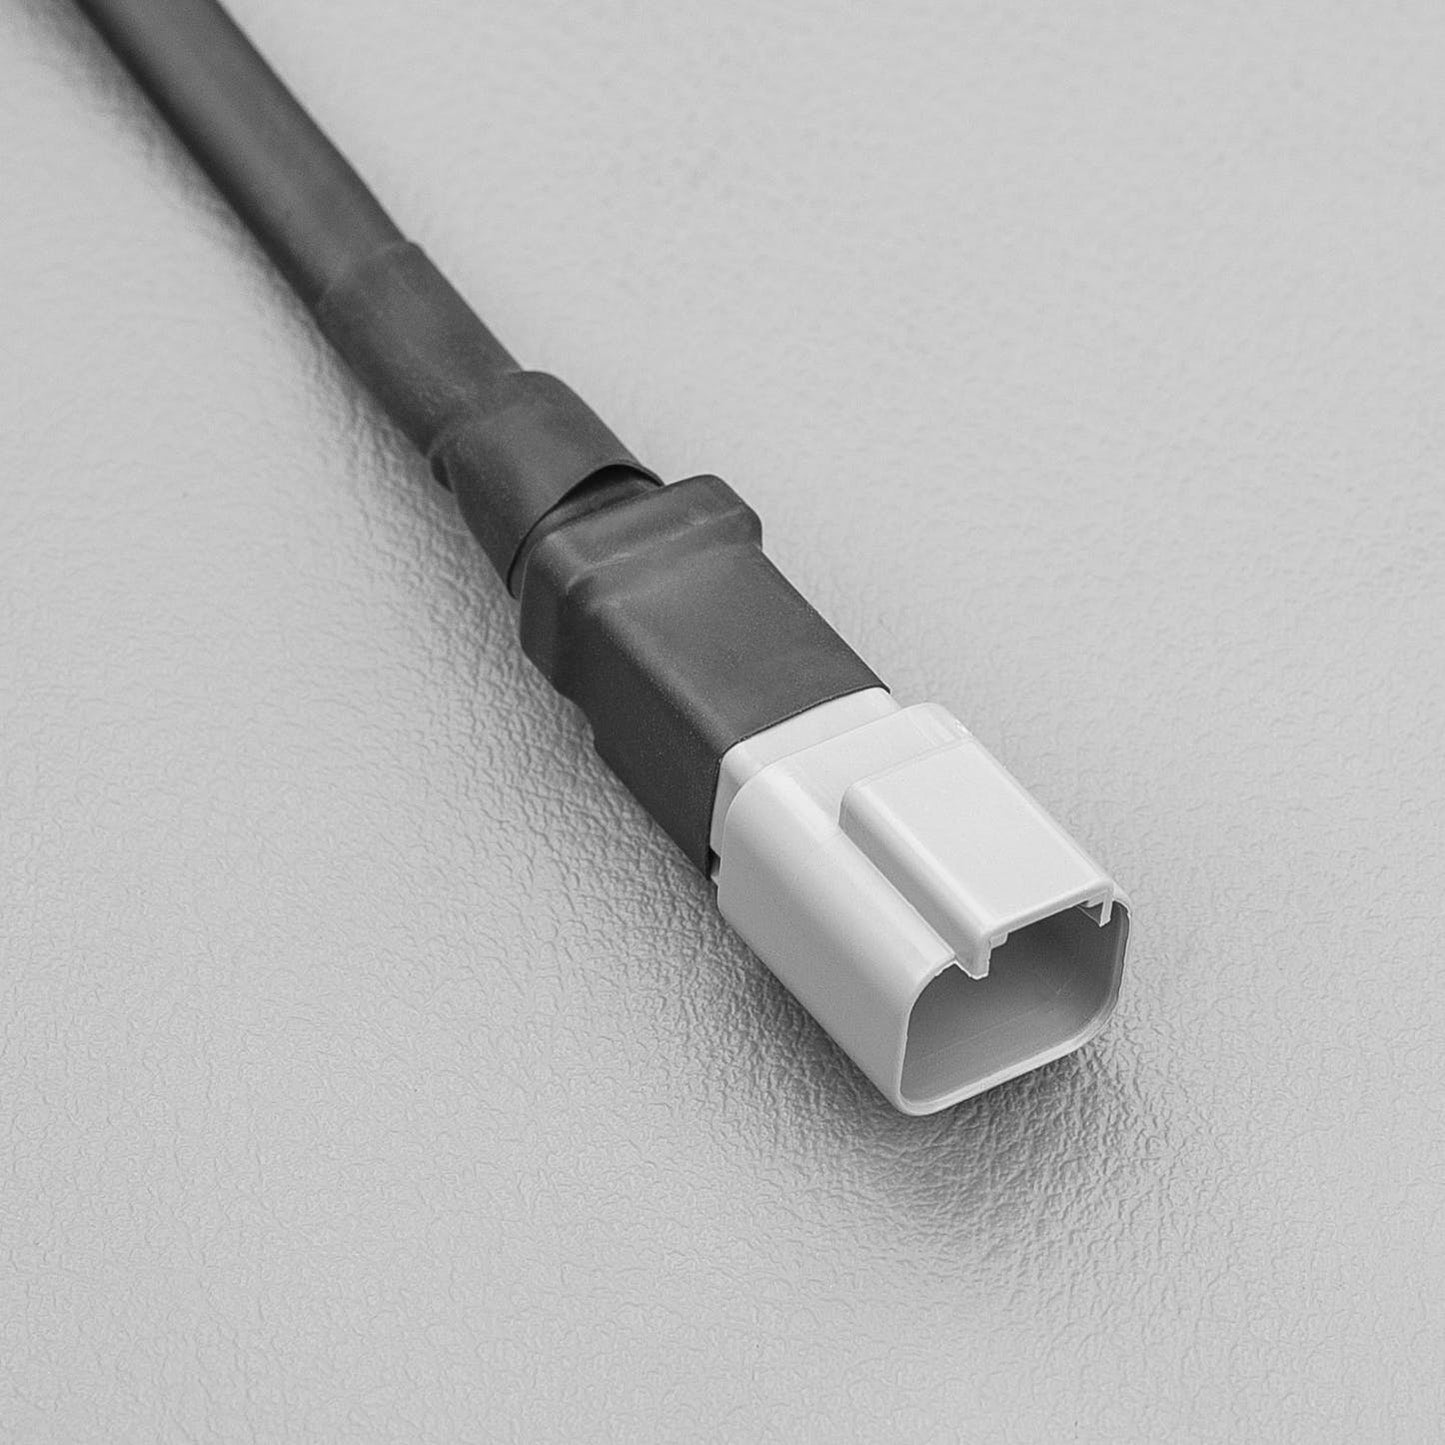 30' (9.1 m) Extension Cable - Deutsch connectors